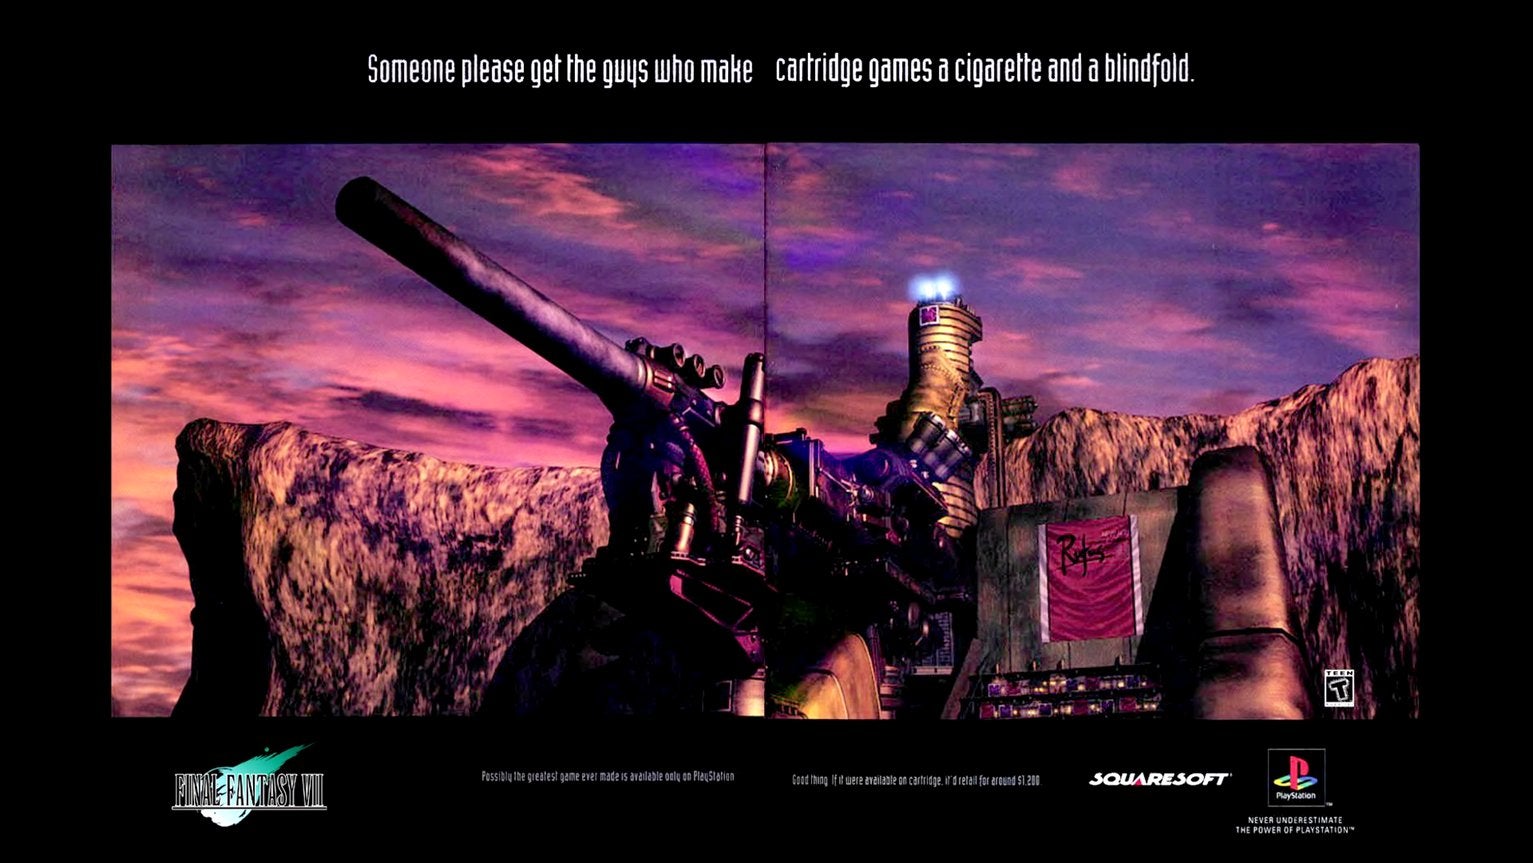 《最终幻想 7》的著名杂志广告，取笑了卡带游戏机的有限功能。